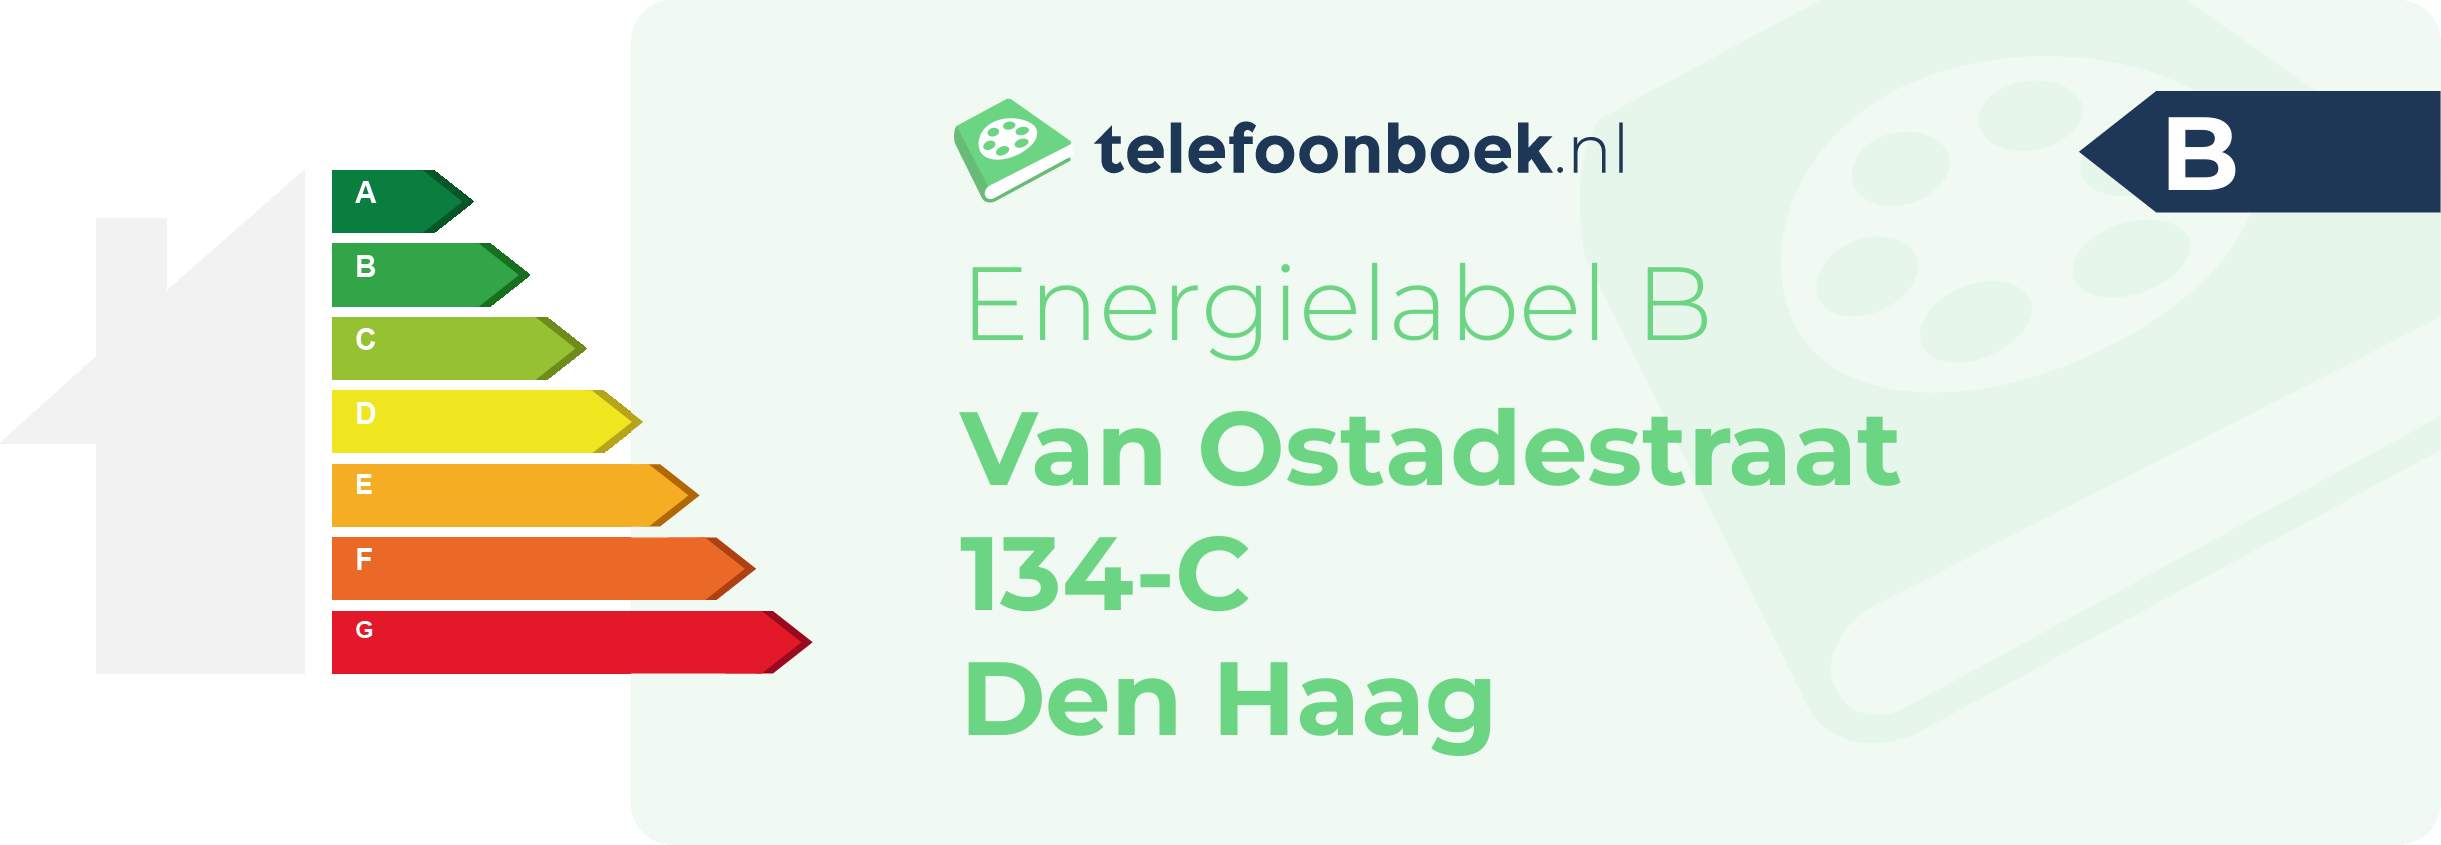 Energielabel Van Ostadestraat 134-C Den Haag